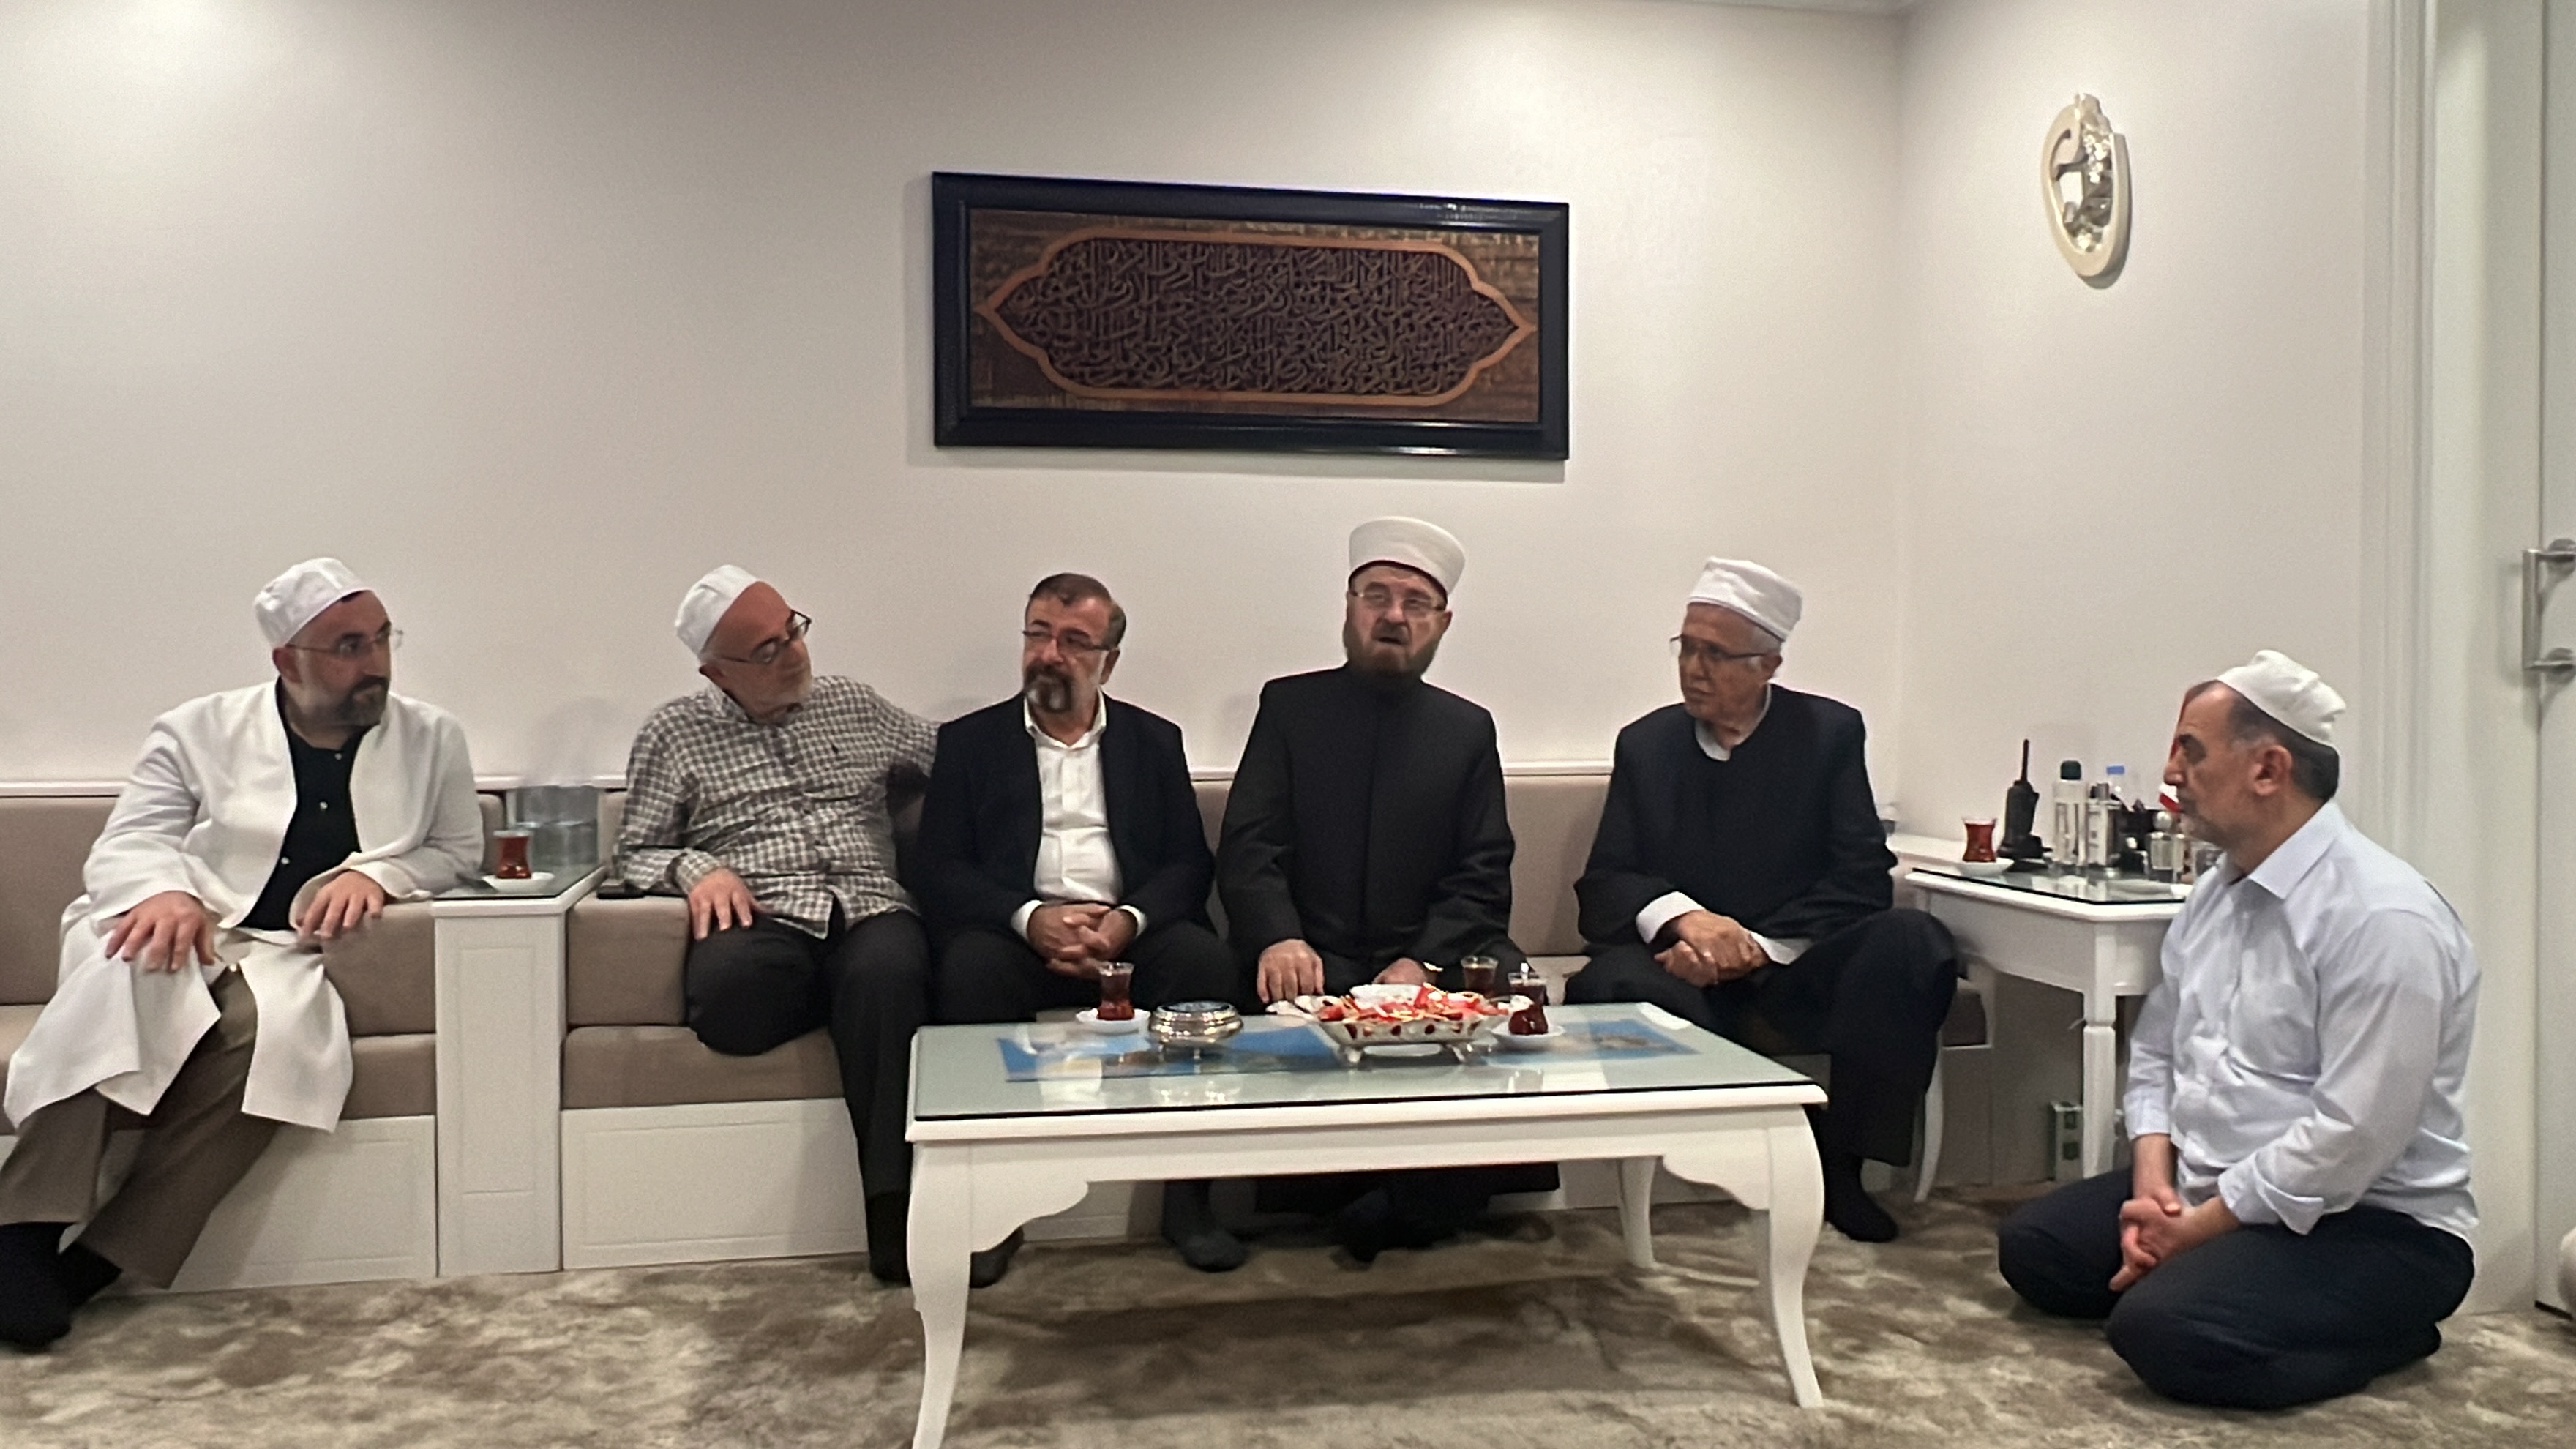 Condoléances présentées et discours émouvant lors de la visite en Turquie du Dr. Ali al-Qaradaghi